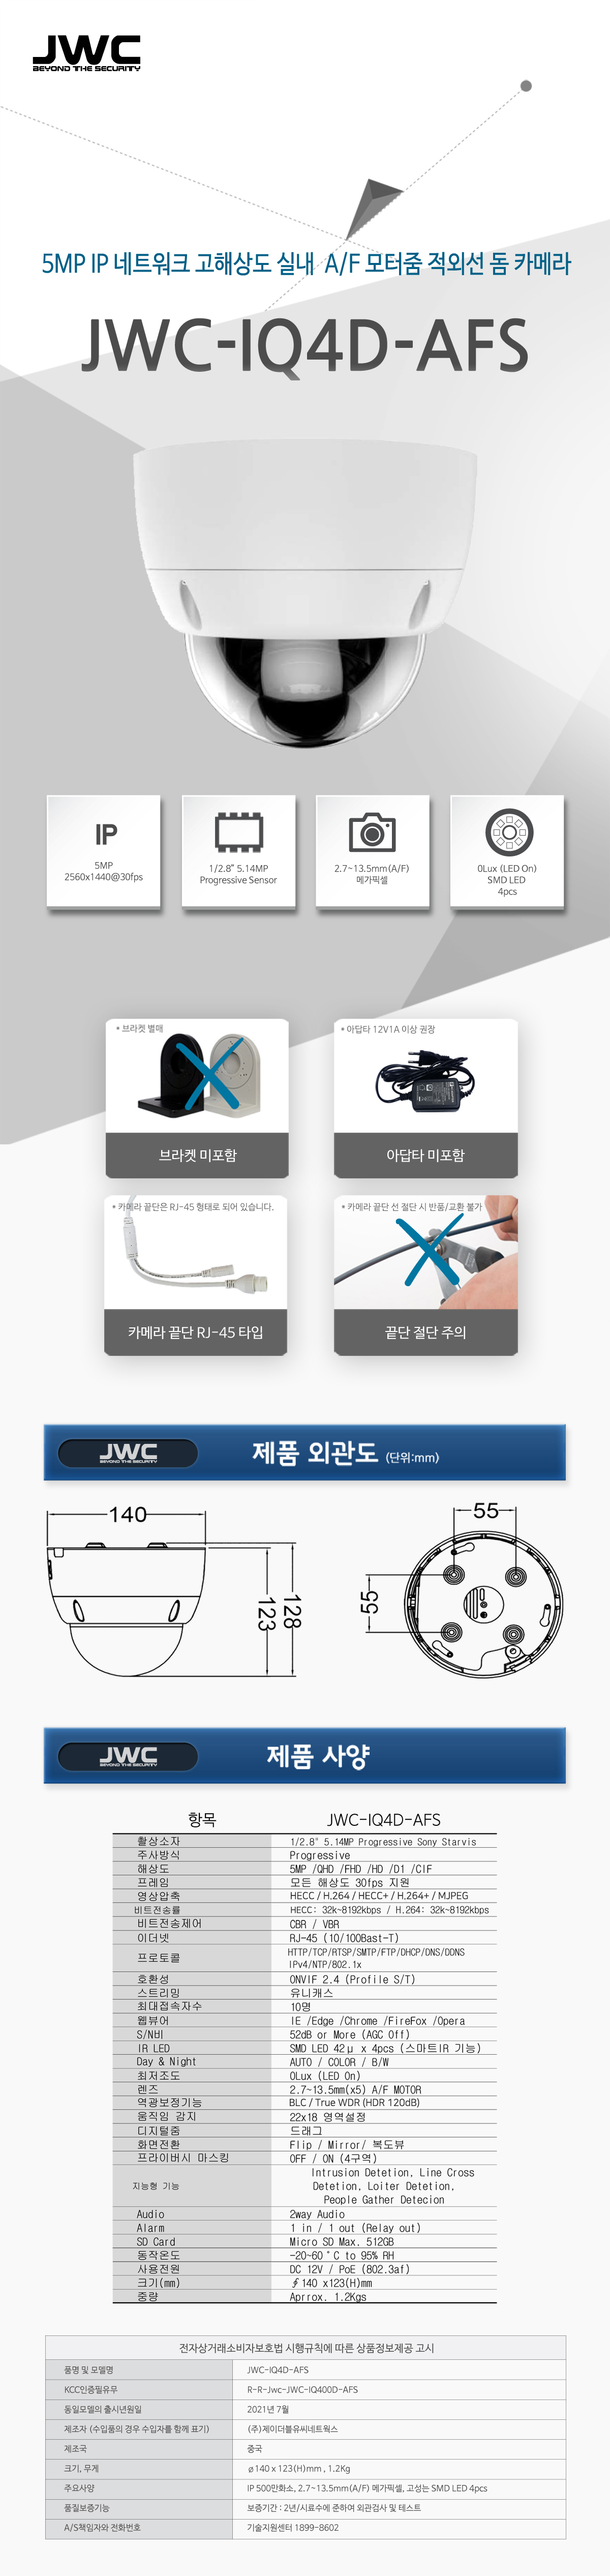 JWC-IQ4D-AFS_.jpg